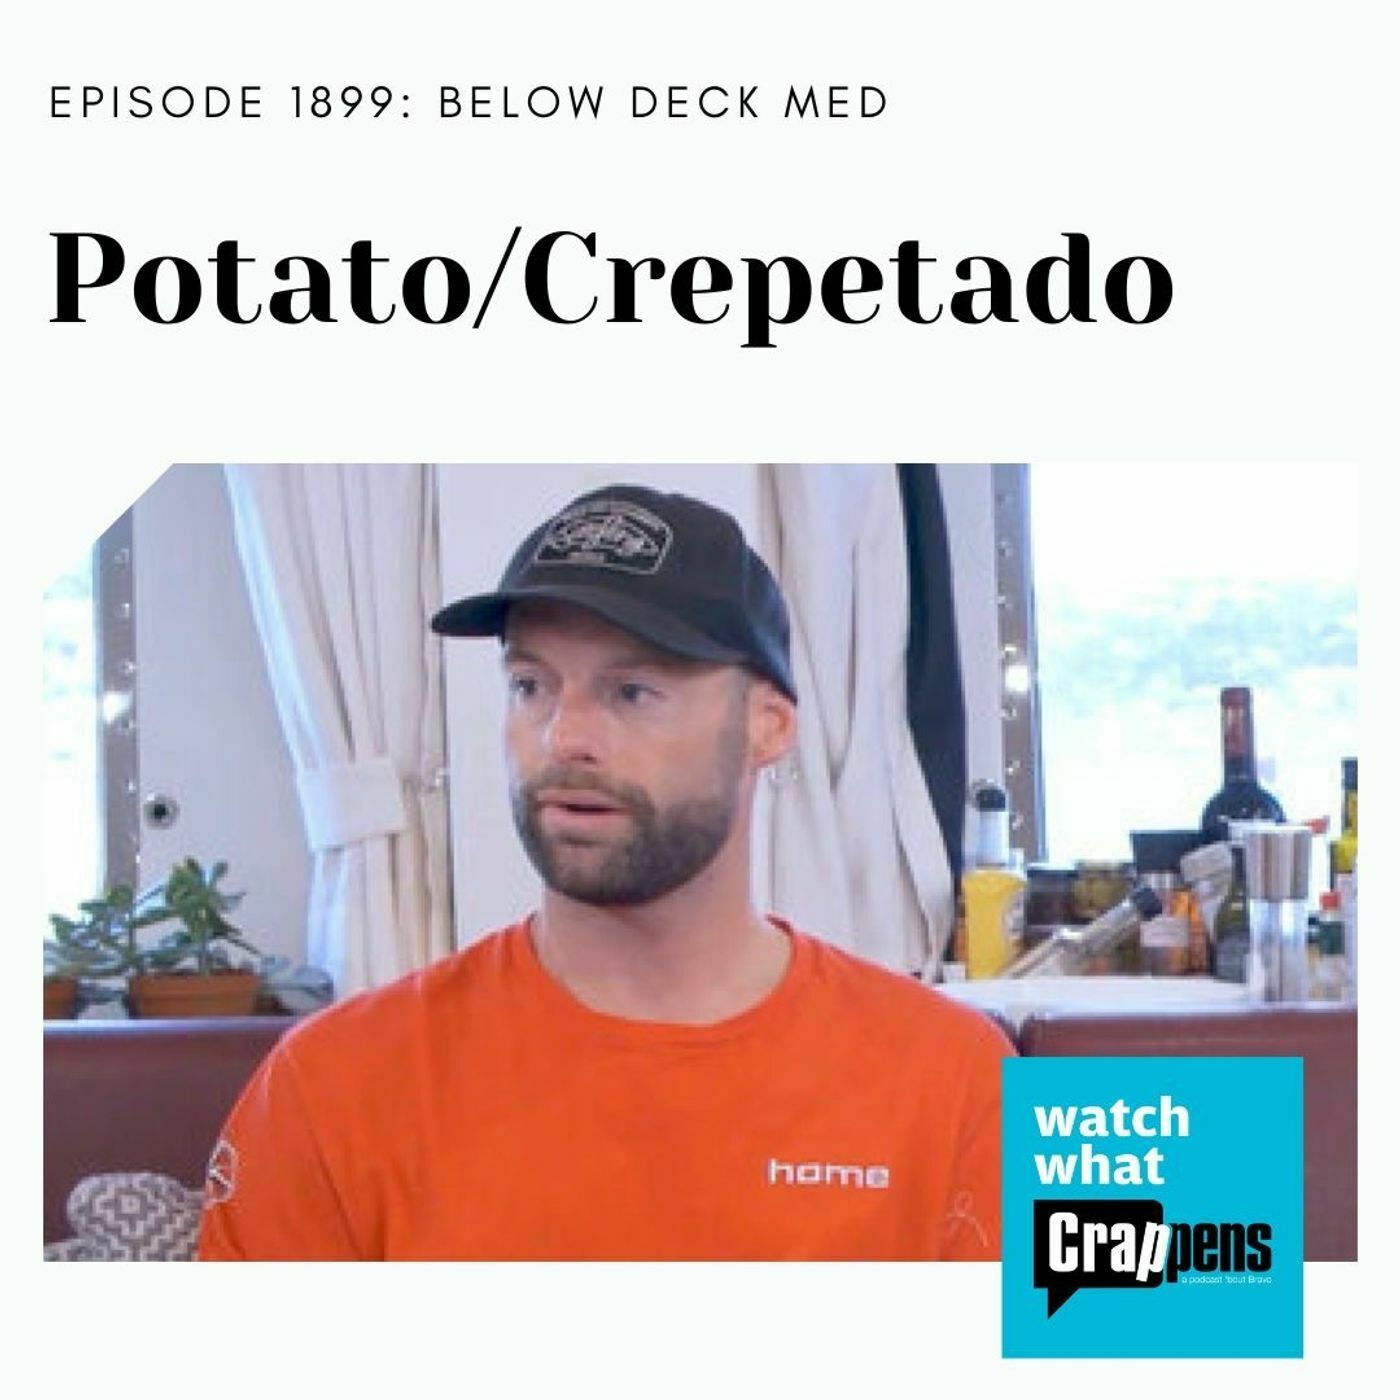 Below Deck Med: Potato/Crepetado